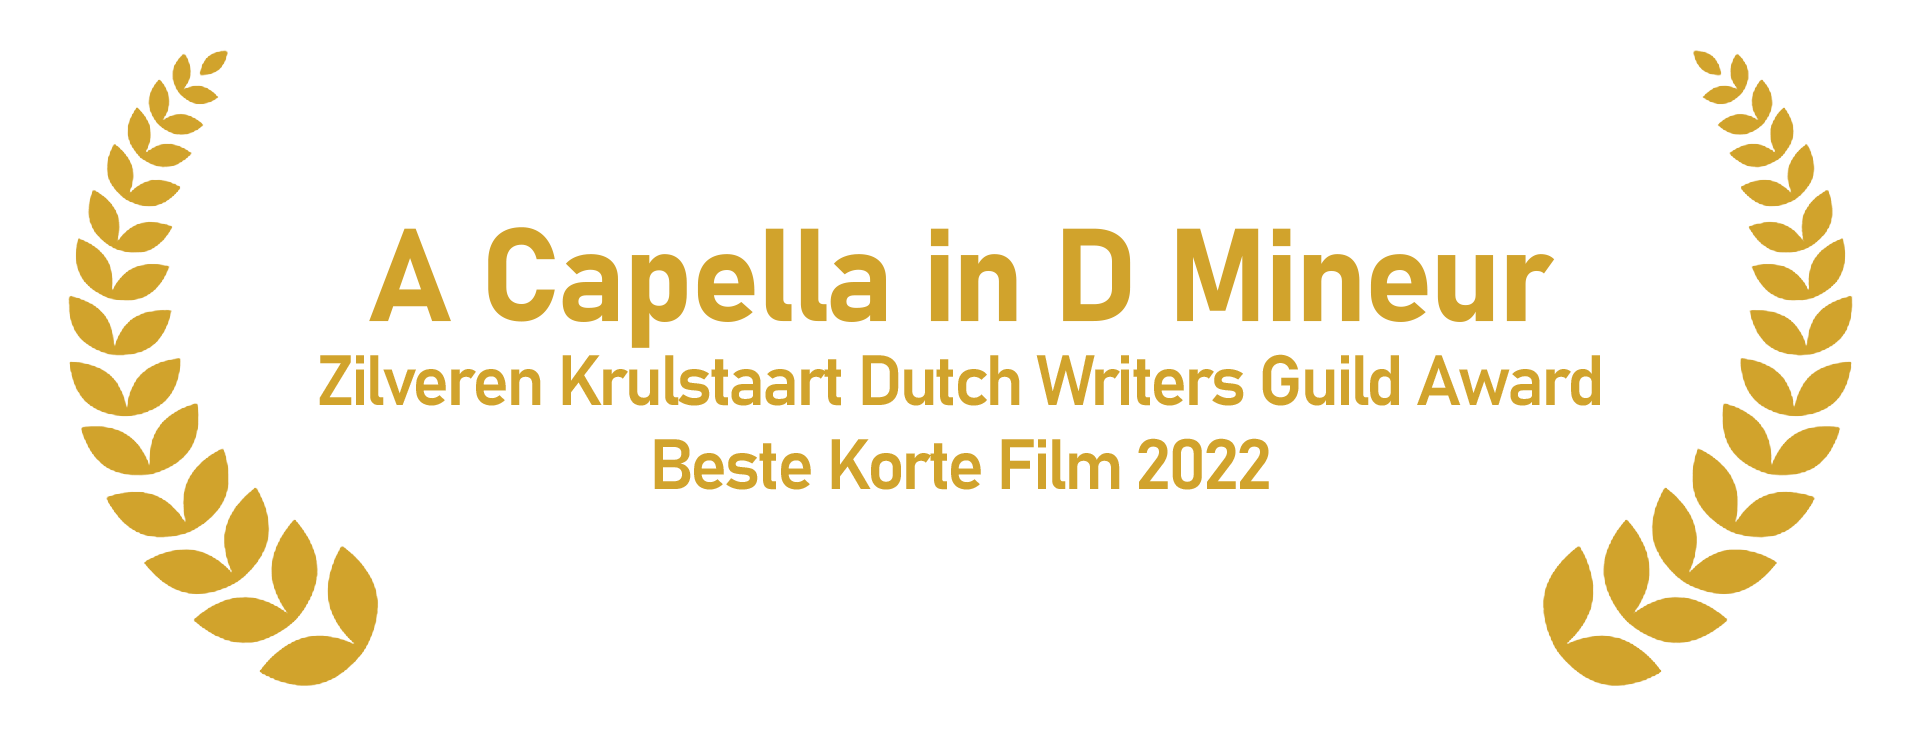 A Capella in D Mineur Beste korte film Zilveren Krulstaart